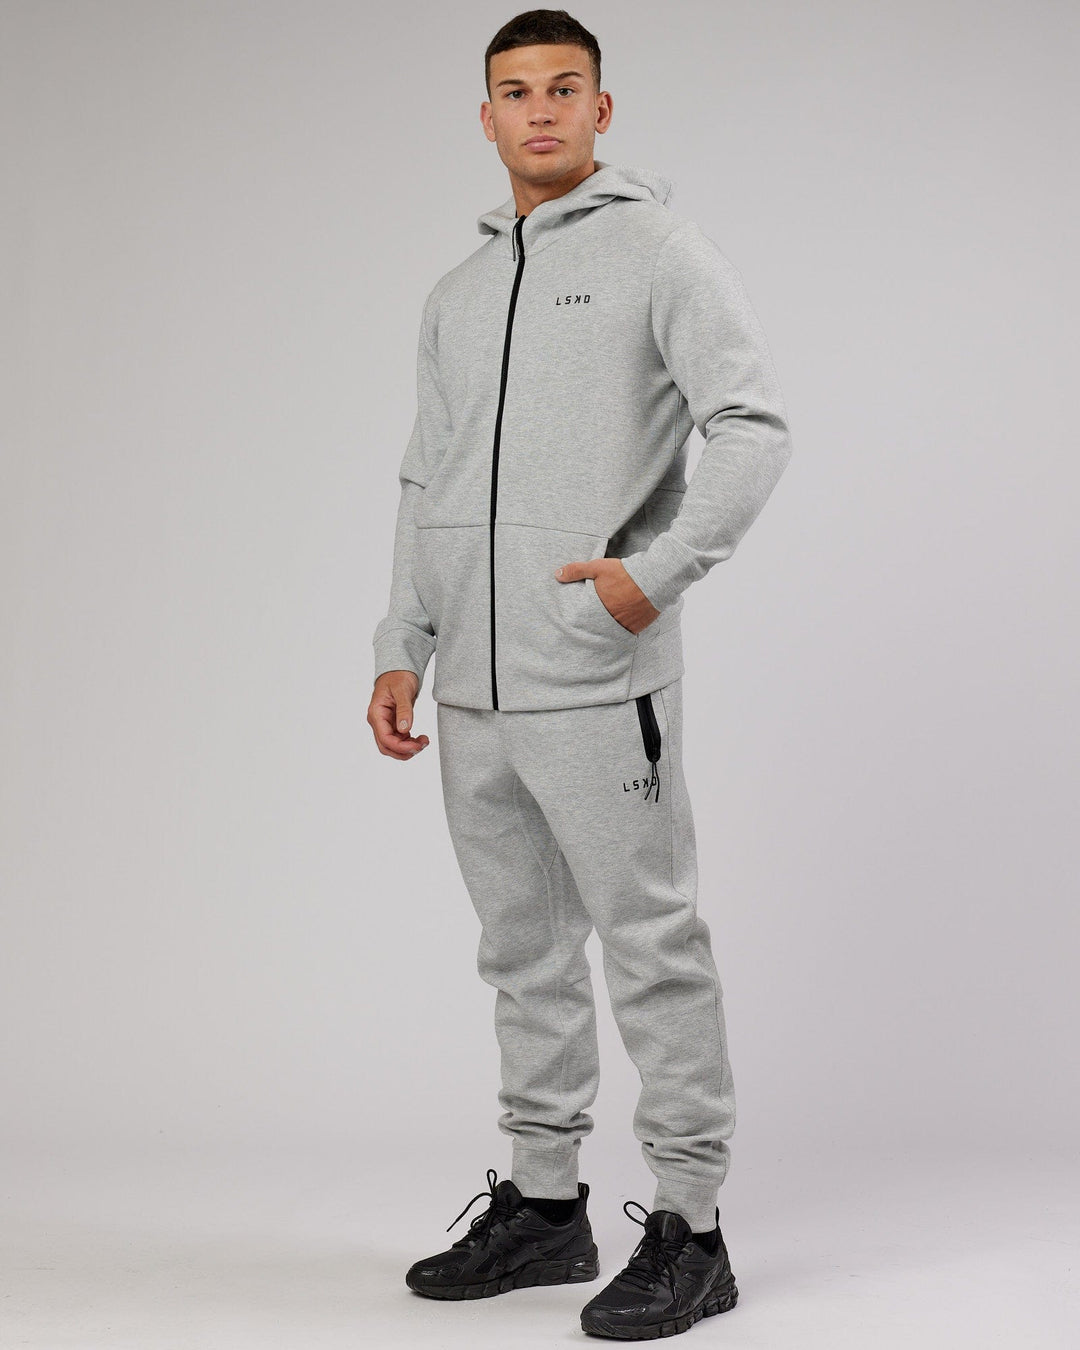 Man wearing Athlete ForgedFleece Zip Up Hoodie - Lt Grey Marl